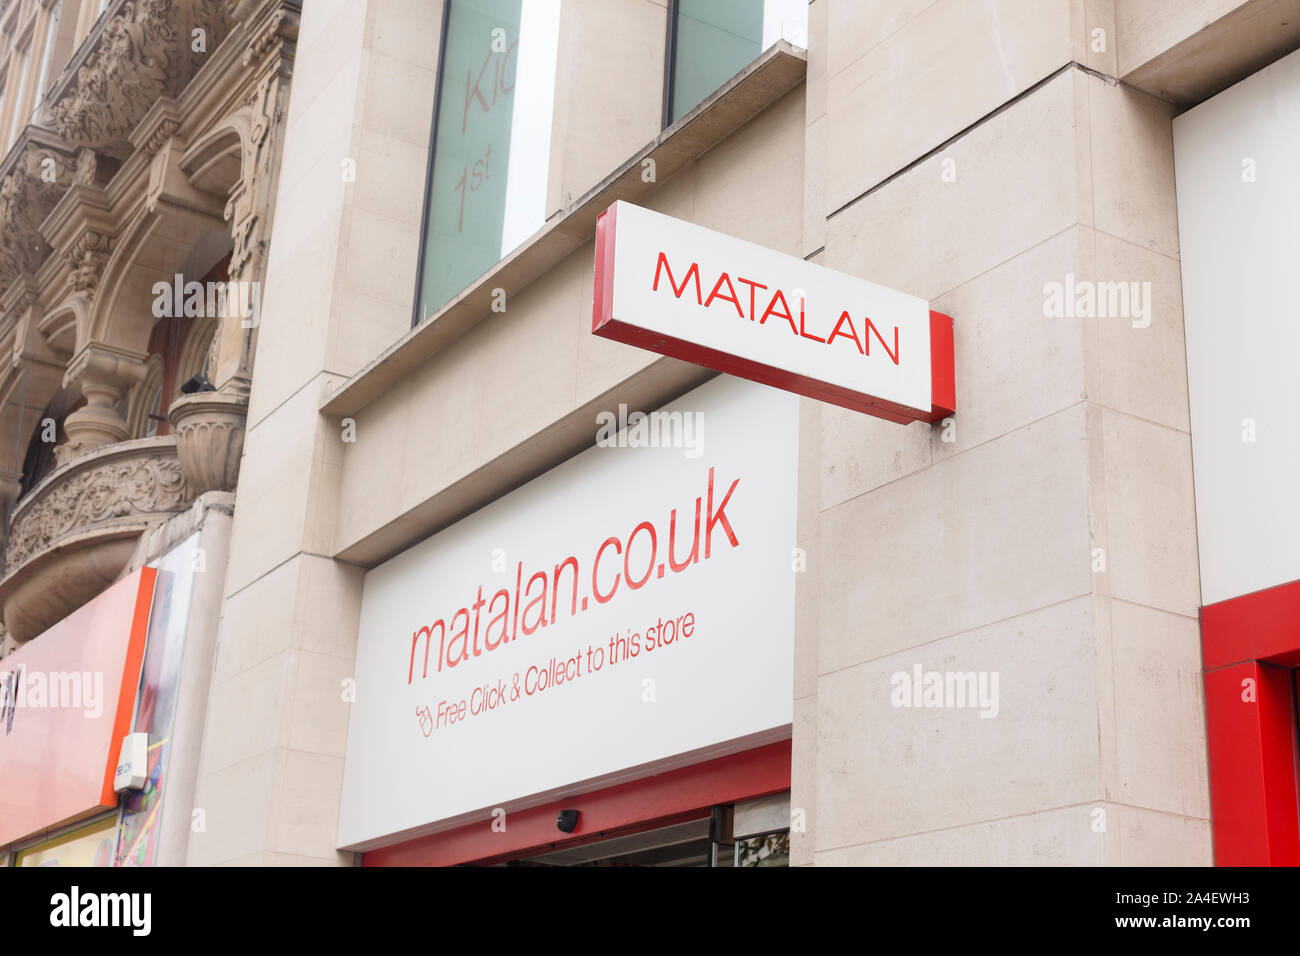 Matalan sign logo, London, England Stock Photo